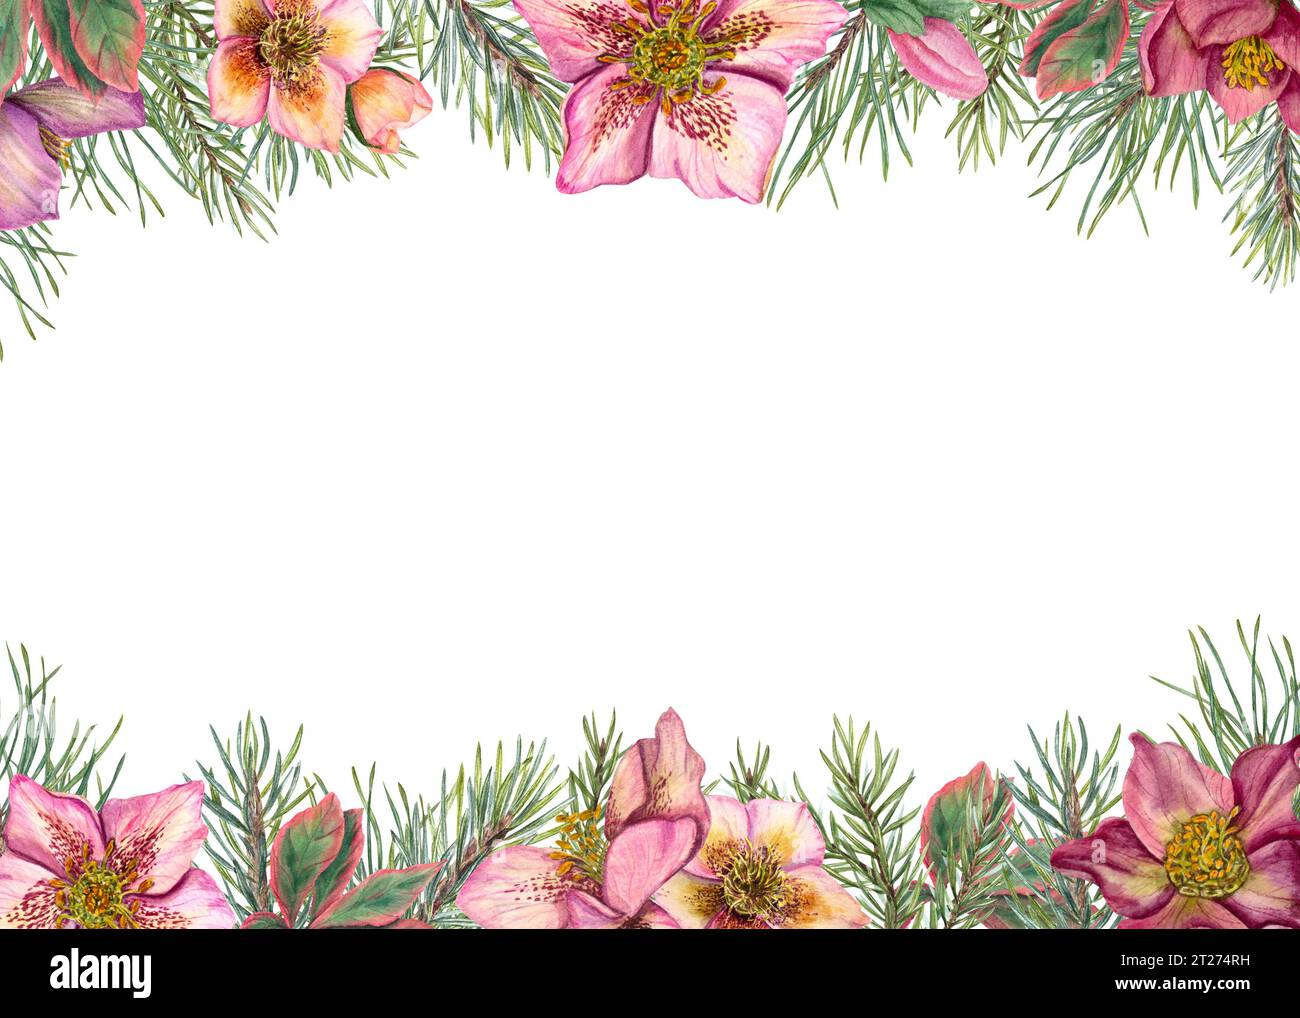 Cadre d'hiver horizontal avec hellébores et branches d'arbre de Noël. Plantes persistantes, pin, épinette, fleurs d'hiver. Illustration à l'aquarelle Banque D'Images